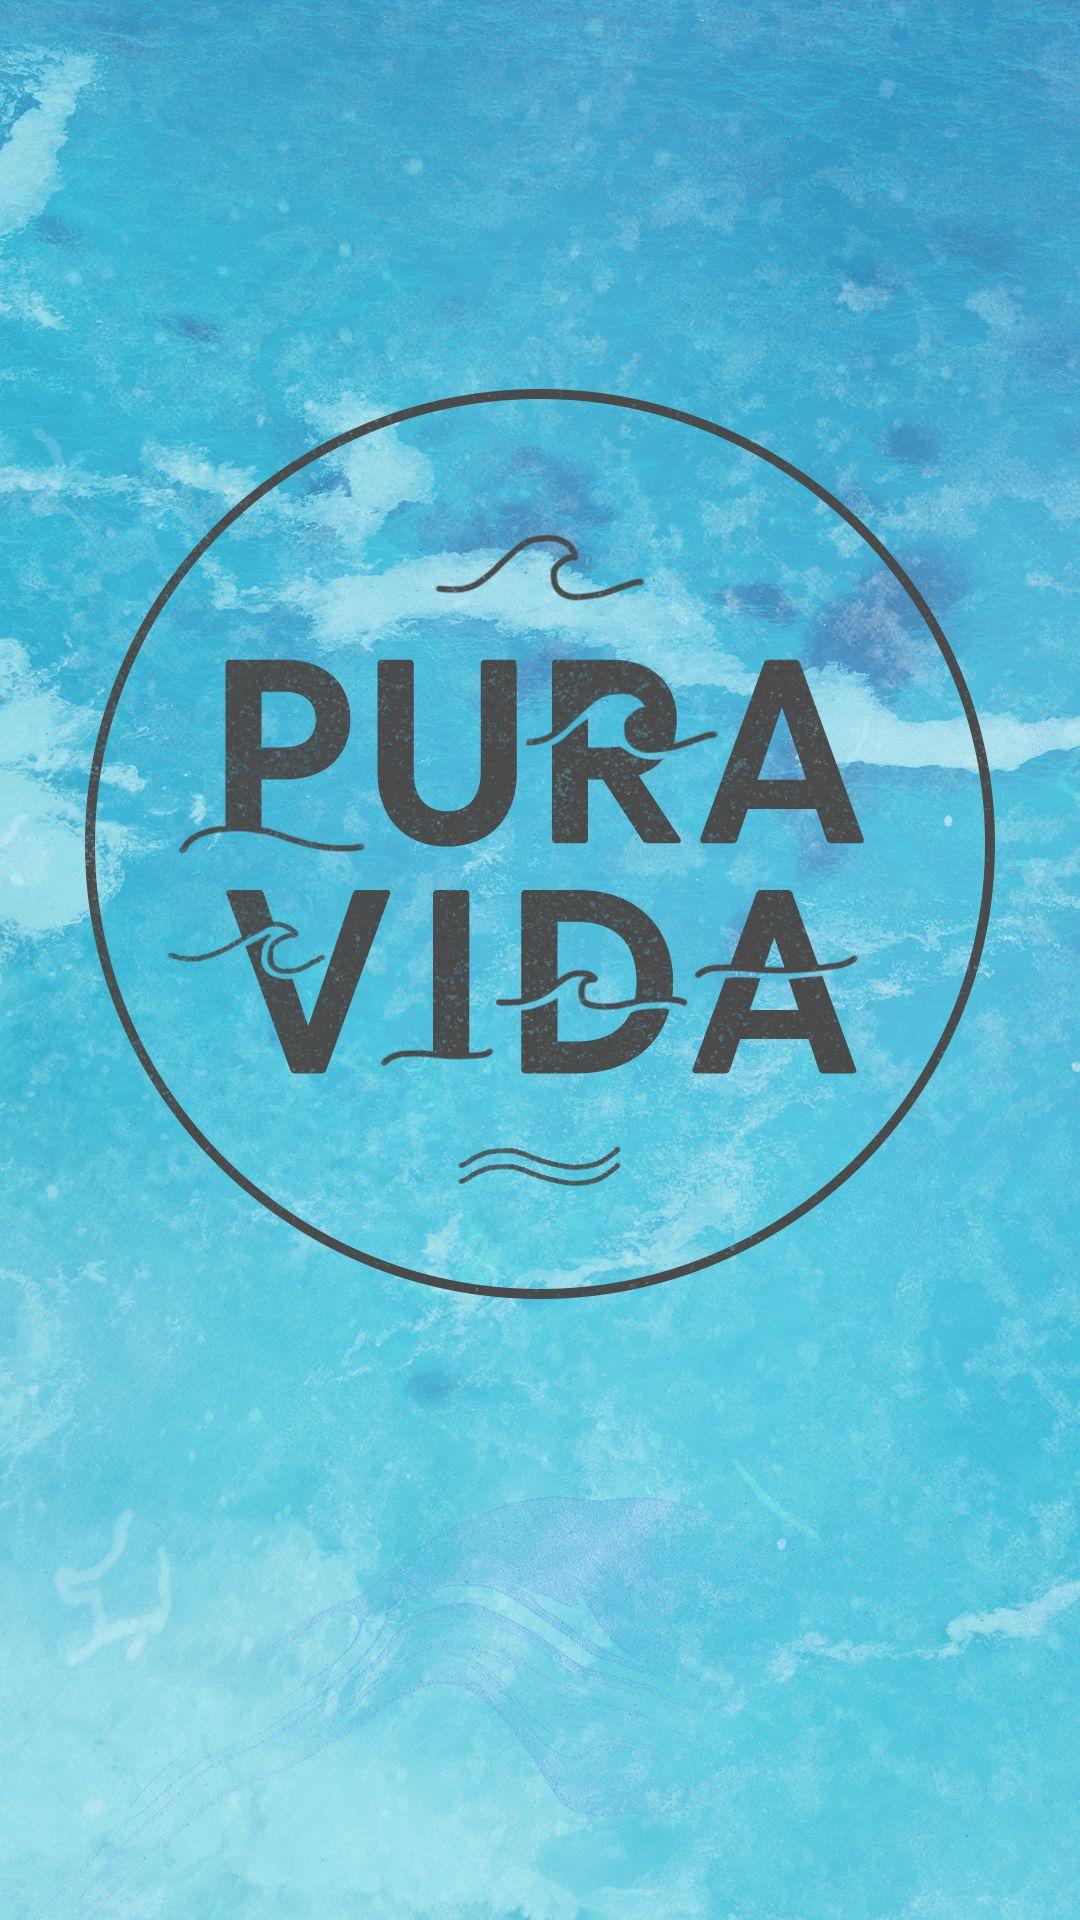 Pura Vida Wallpapers - Wallpaper Cave